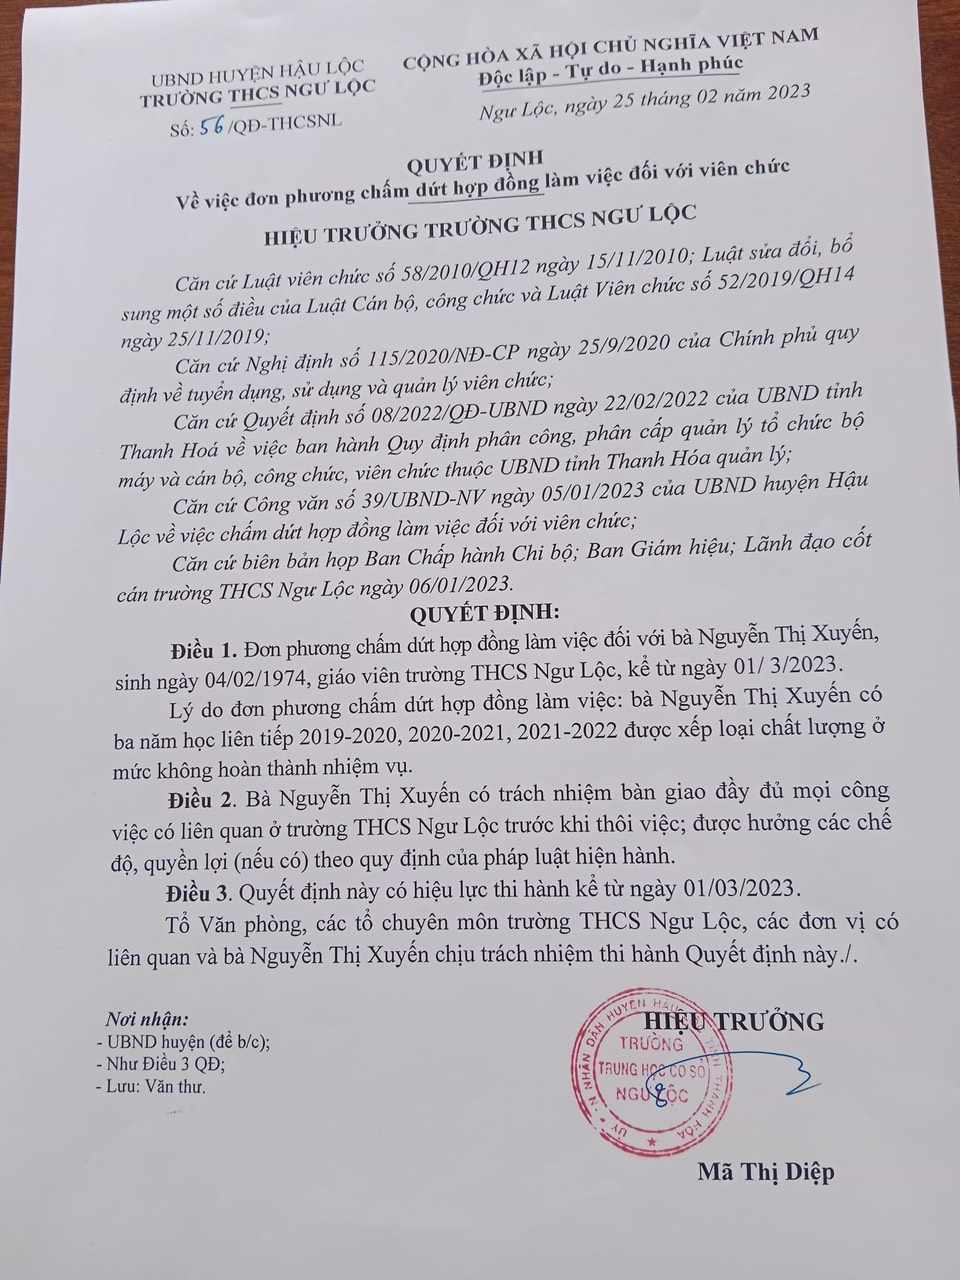 Nguyễn Thị Xuyến từng bị xử phạt hành chính 15 triệu đồng - Ảnh 3.